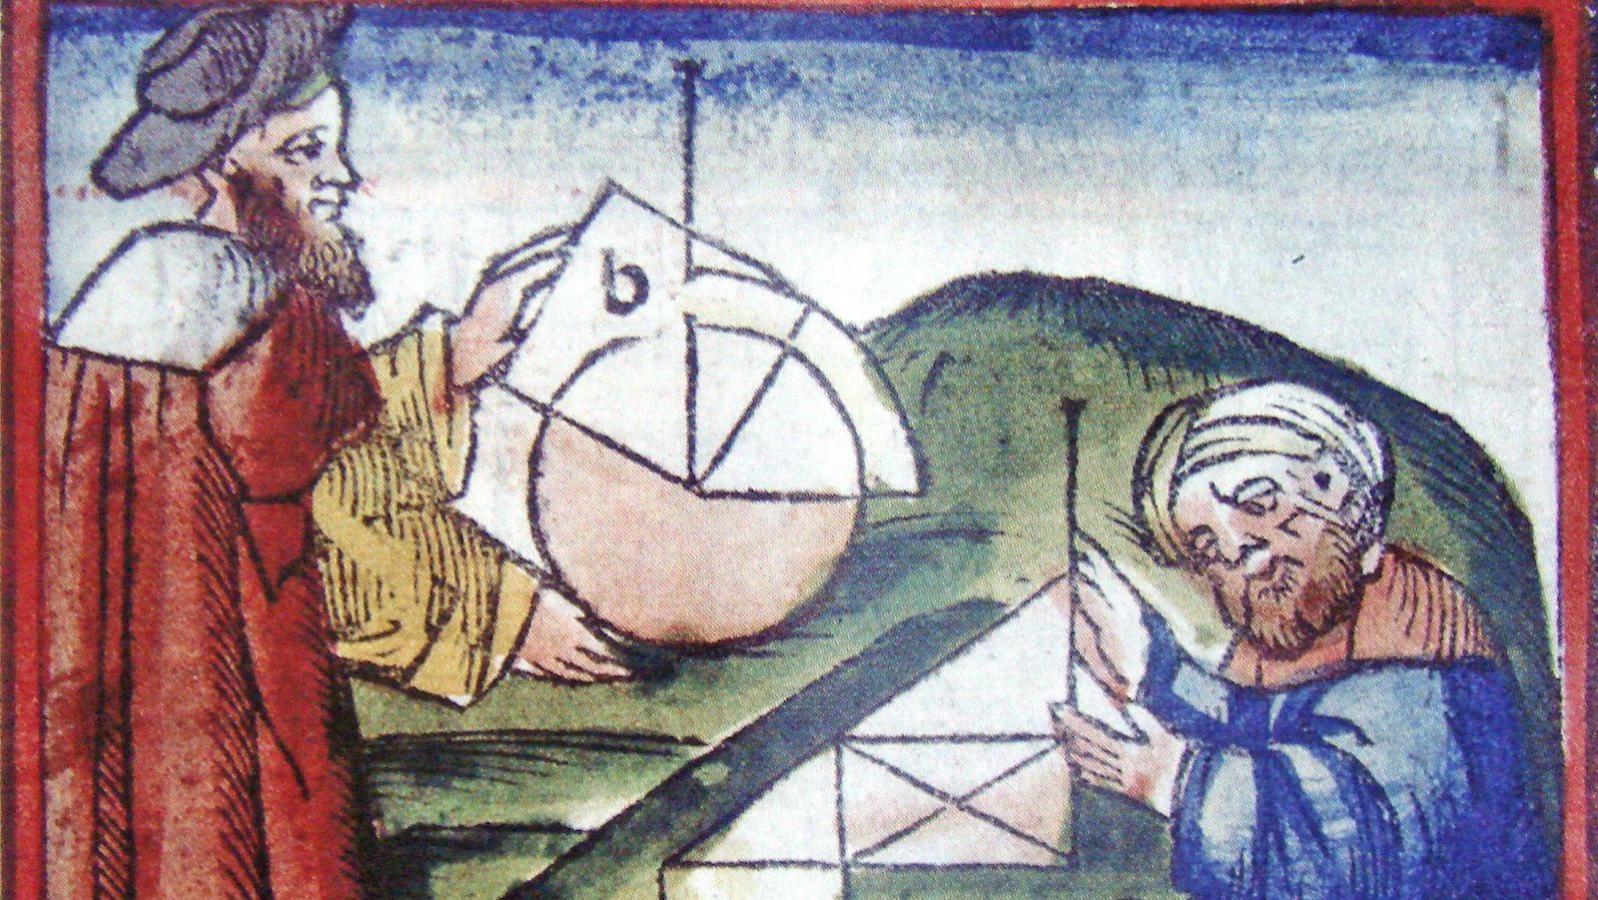 ÐÐ°ÑÑÐ¸Ð½ÐºÐ¸ Ð¿Ð¾ Ð·Ð°Ð¿ÑÐ¾ÑÑ arabic numerals in medieval islamic manuscripts